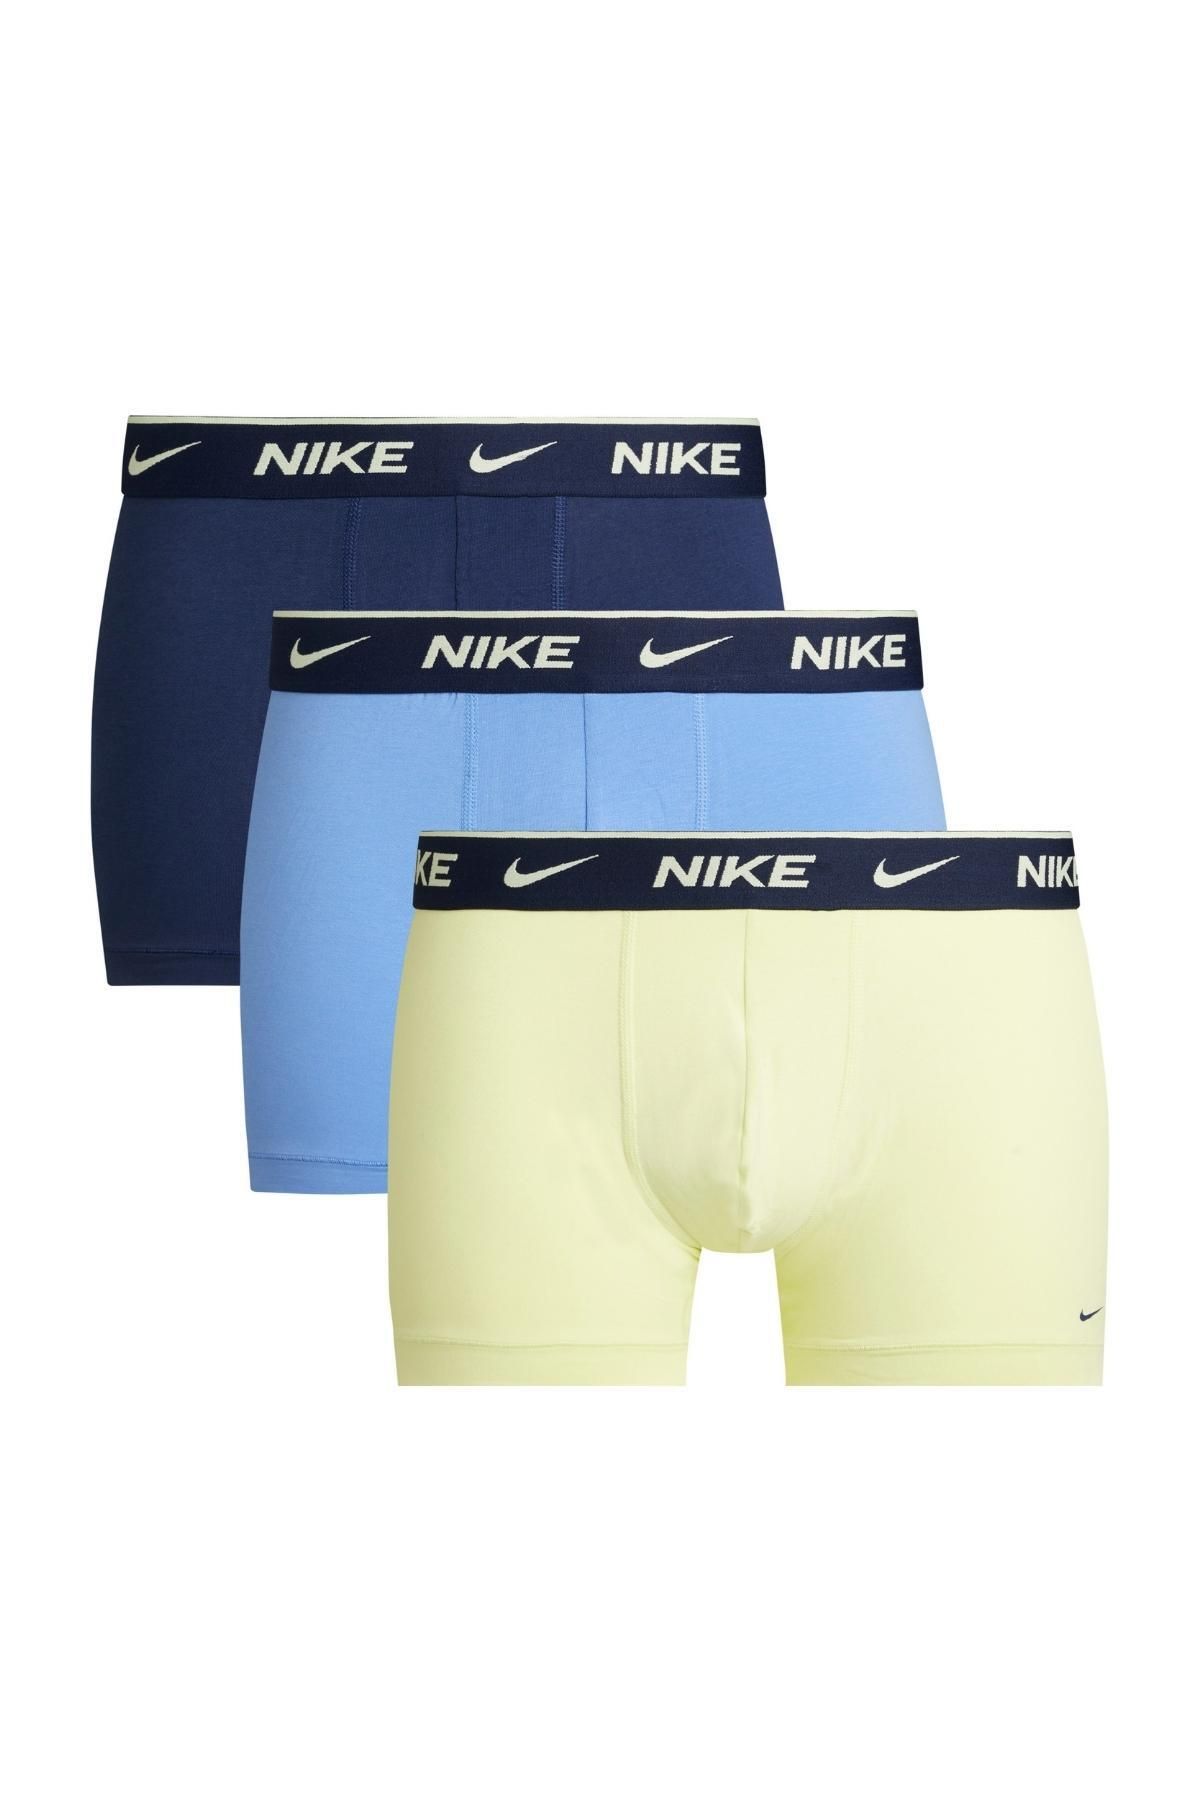 Nike Erkek Nike Marka Logolu Elastik Bantlı Günlük Kullanıma Uygun Lacivert-mavi-sarı Boxer 0000ke1008-fr